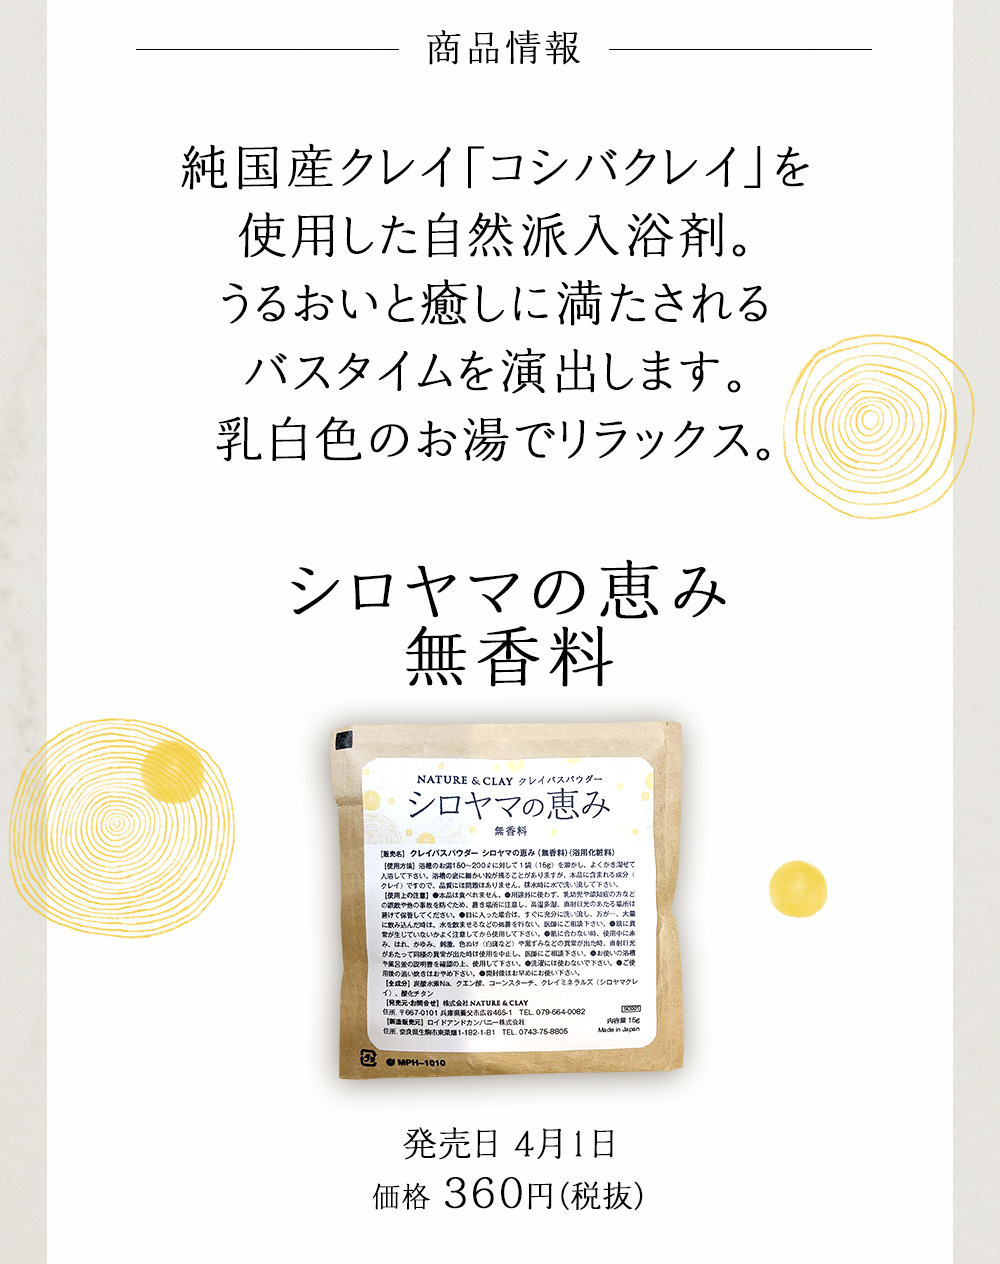 商品情報。シロヤマの恵み無香料。純国産クレイ「コシバクレイ」を使用した自然派入浴剤。